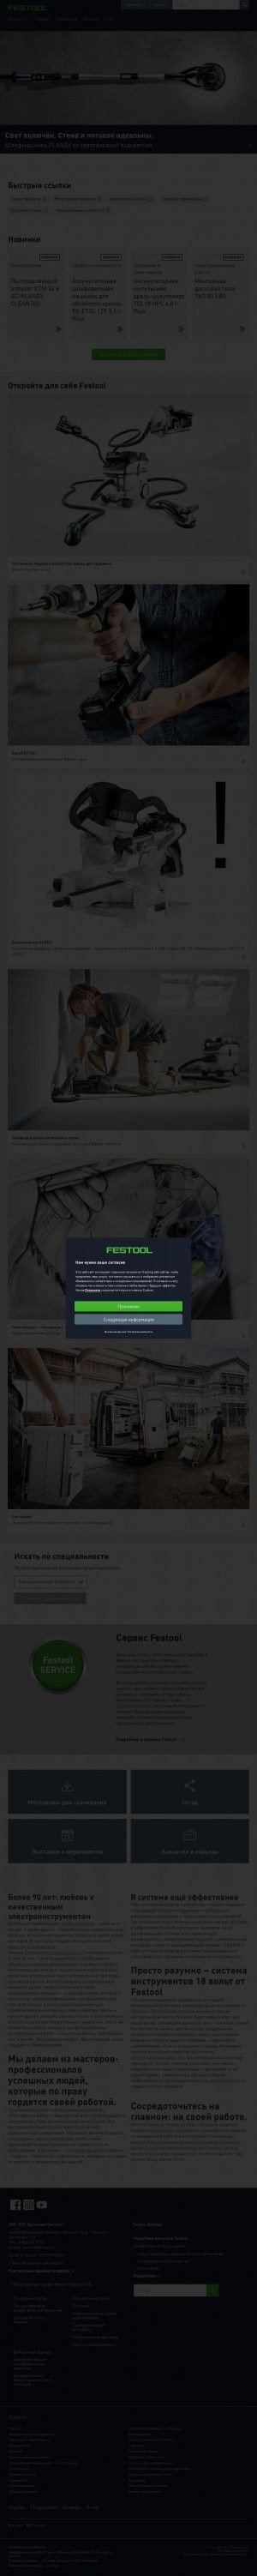 Предпросмотр для www.festool.ru — ТТС Тултехник системс